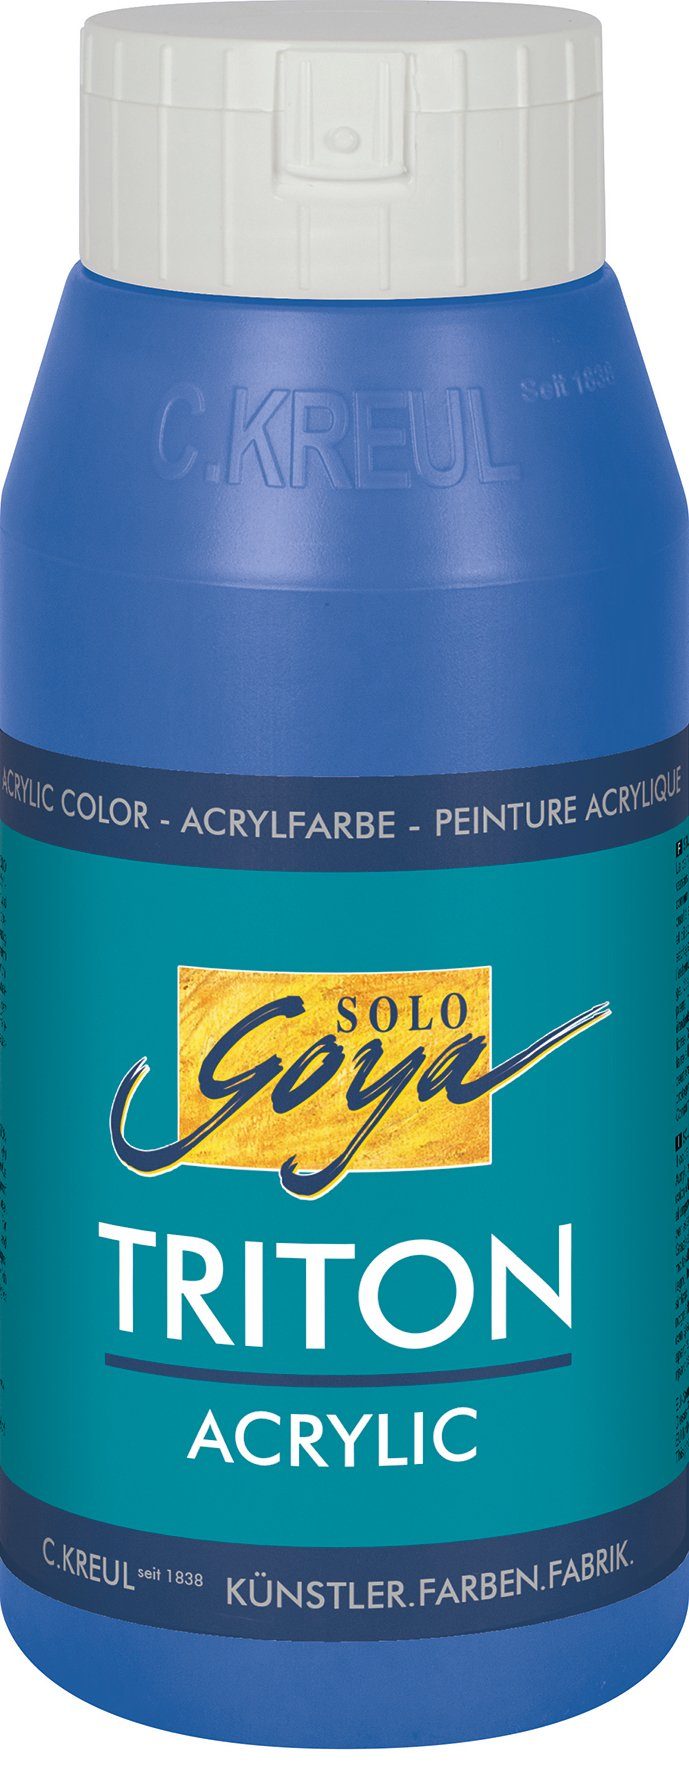 Goya 750 Acrylic, Kreul Triton Acrylfarbe Solo ml Kobaltblau